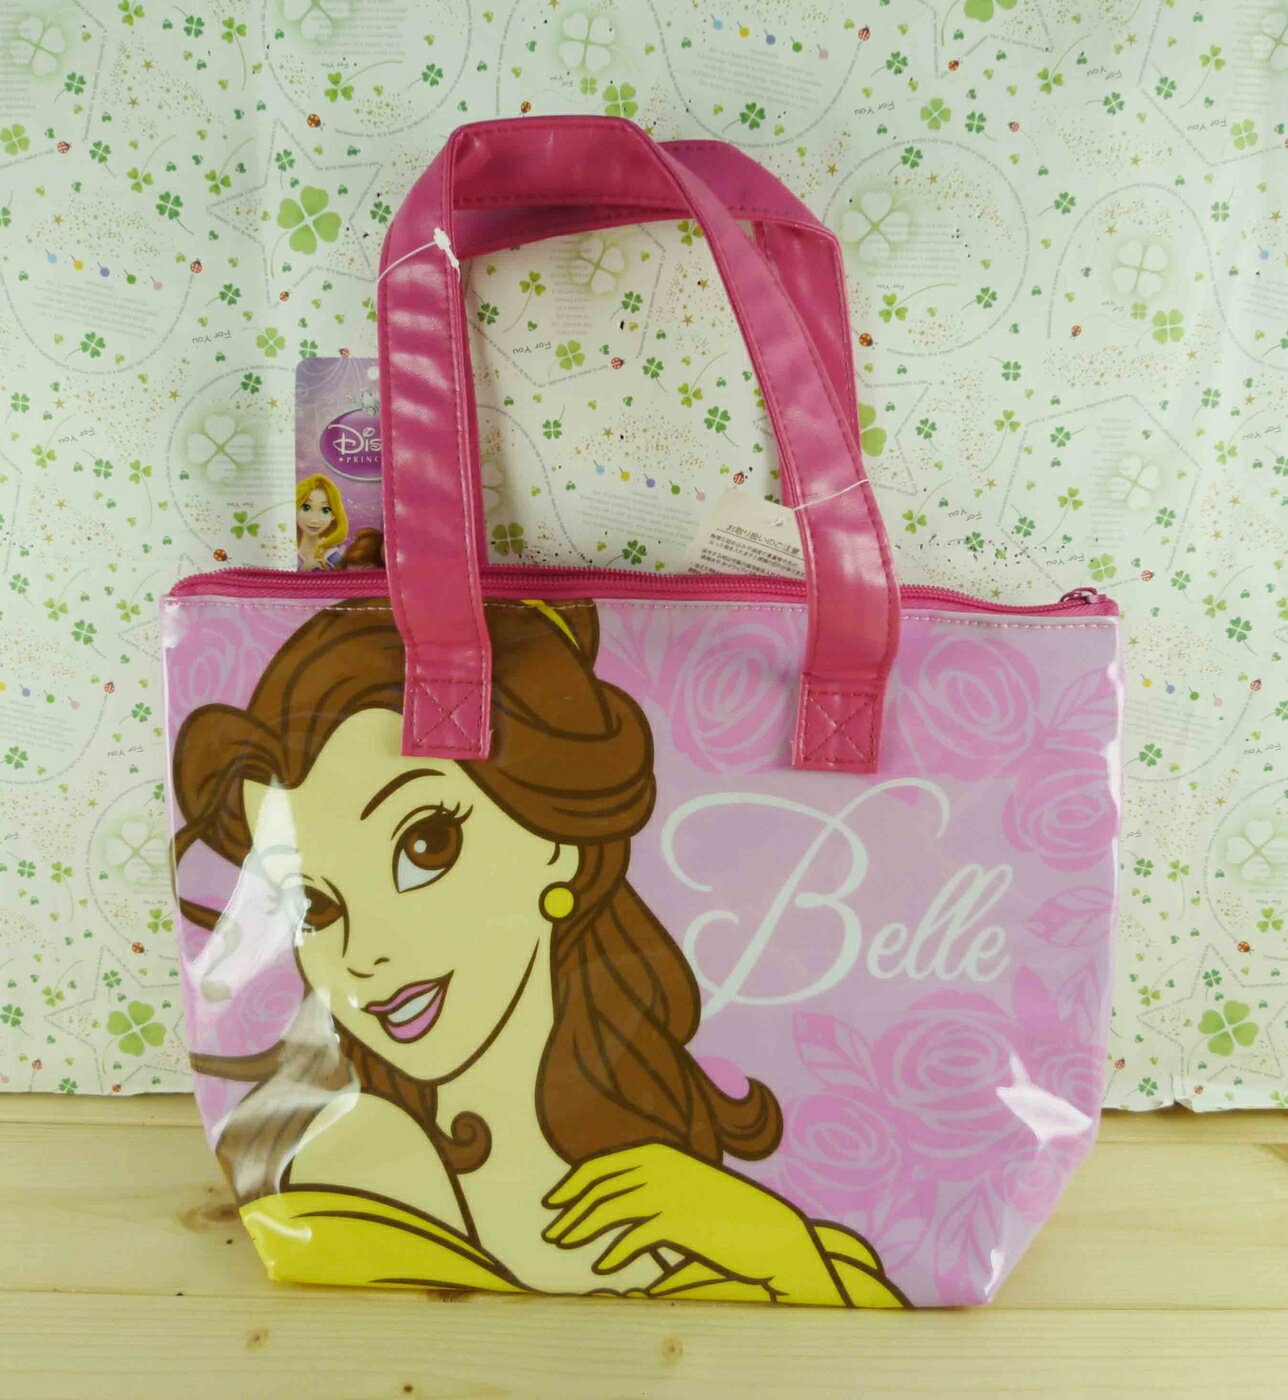 【震撼精品百貨】Disney 迪士尼公主系列 貝兒袋子-粉色(可當保溫袋) 震撼日式精品百貨